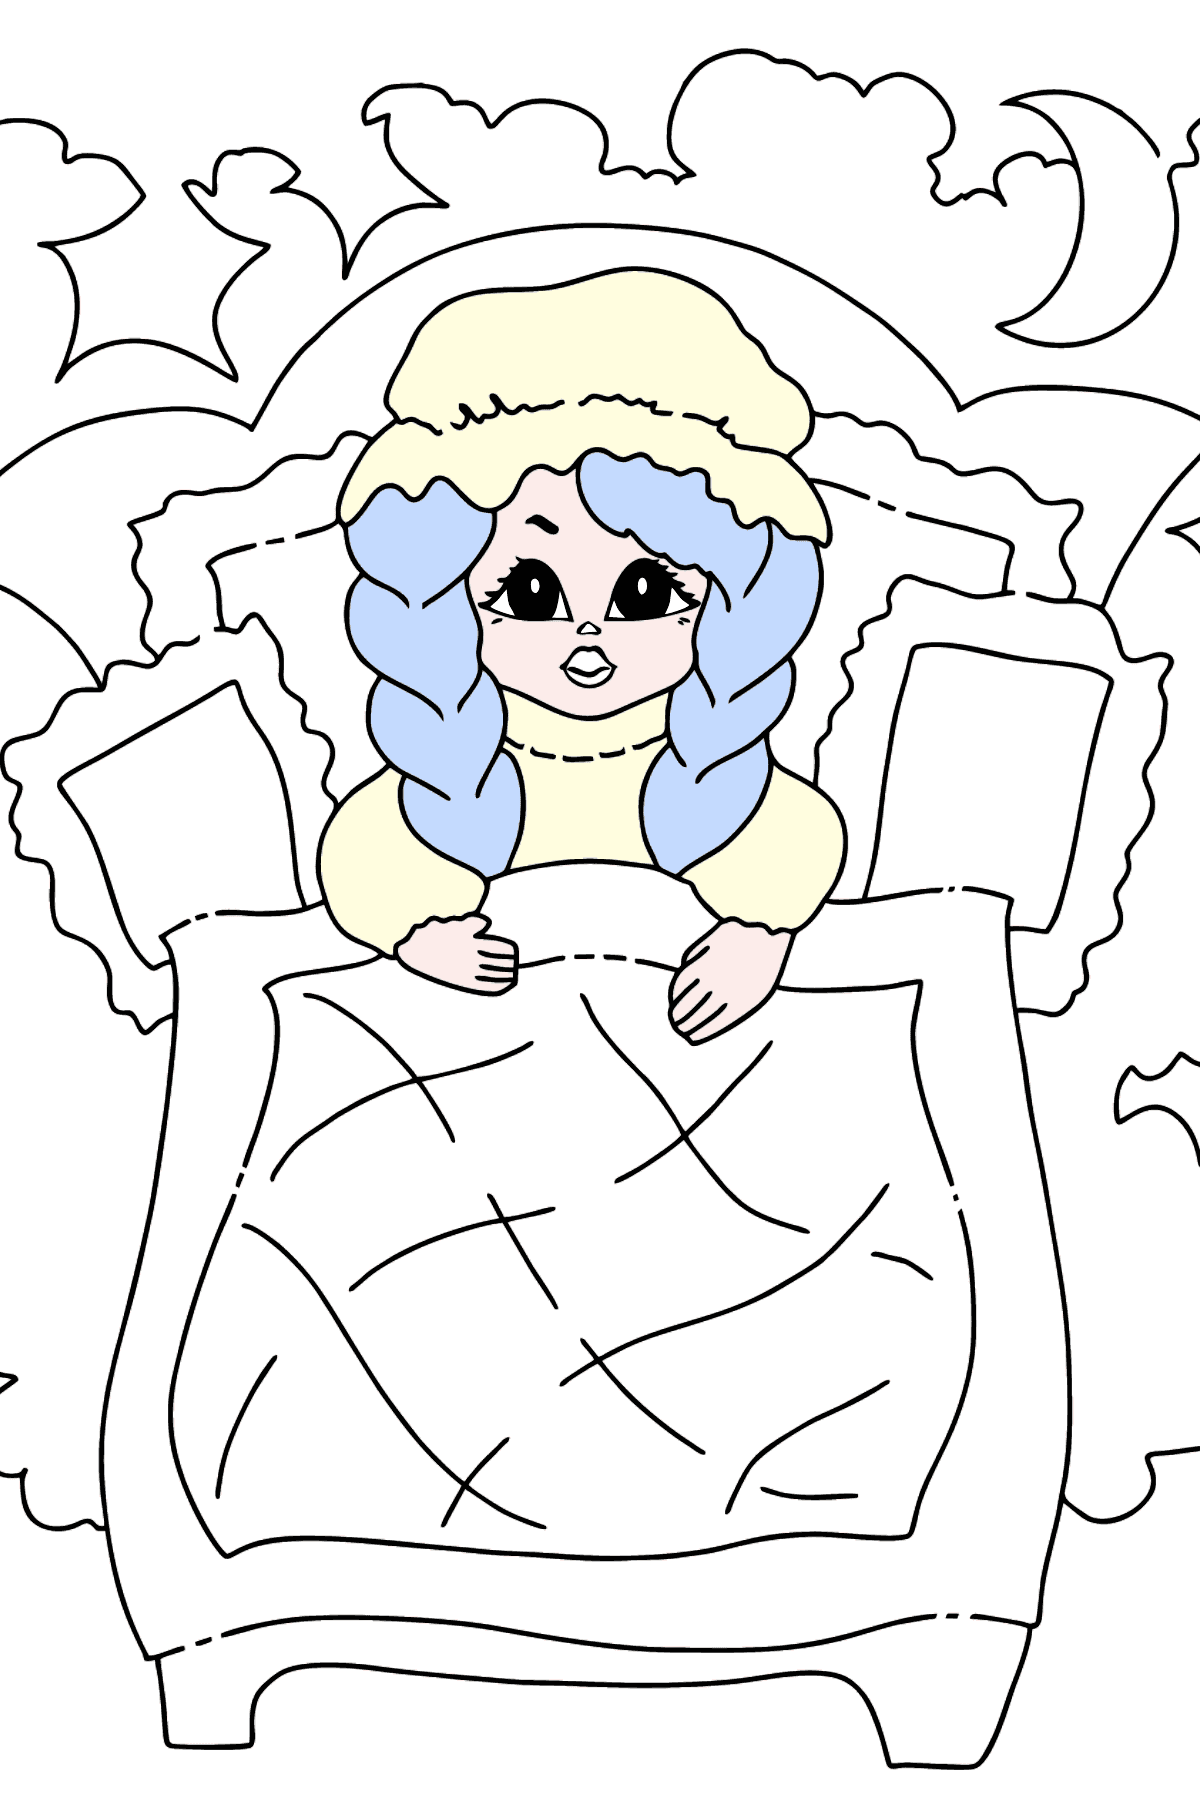 Desenho de princesa gentil para colorir (fácil) - Imagens para Colorir para Crianças